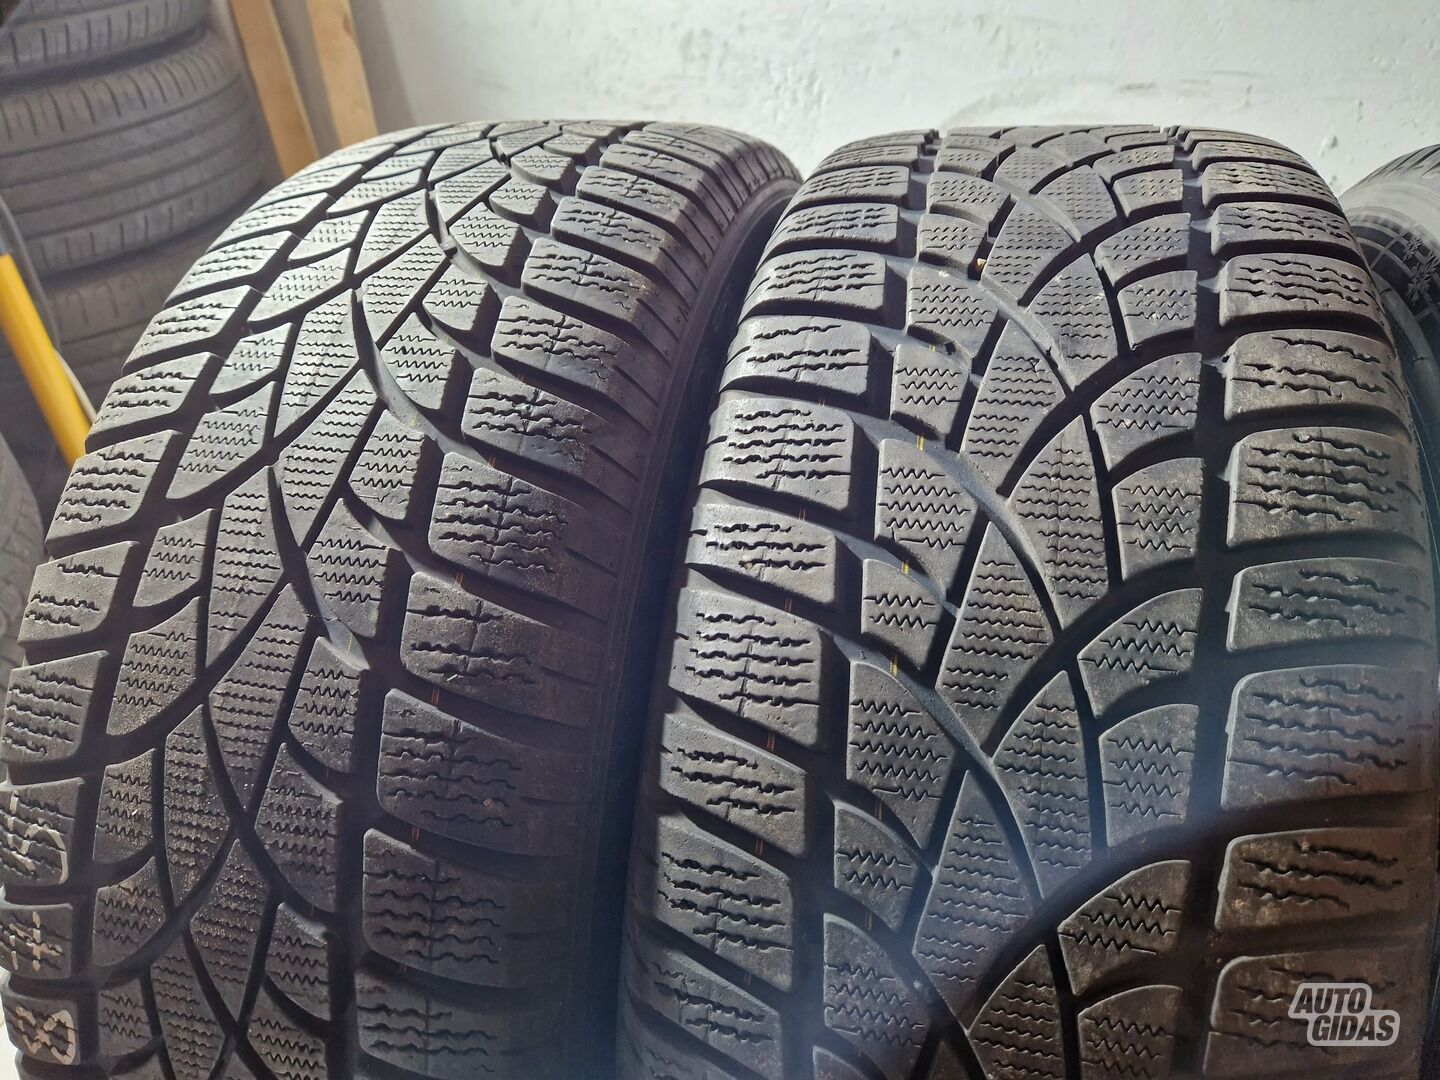 Dunlop 6mm R19 winter tyres passanger car